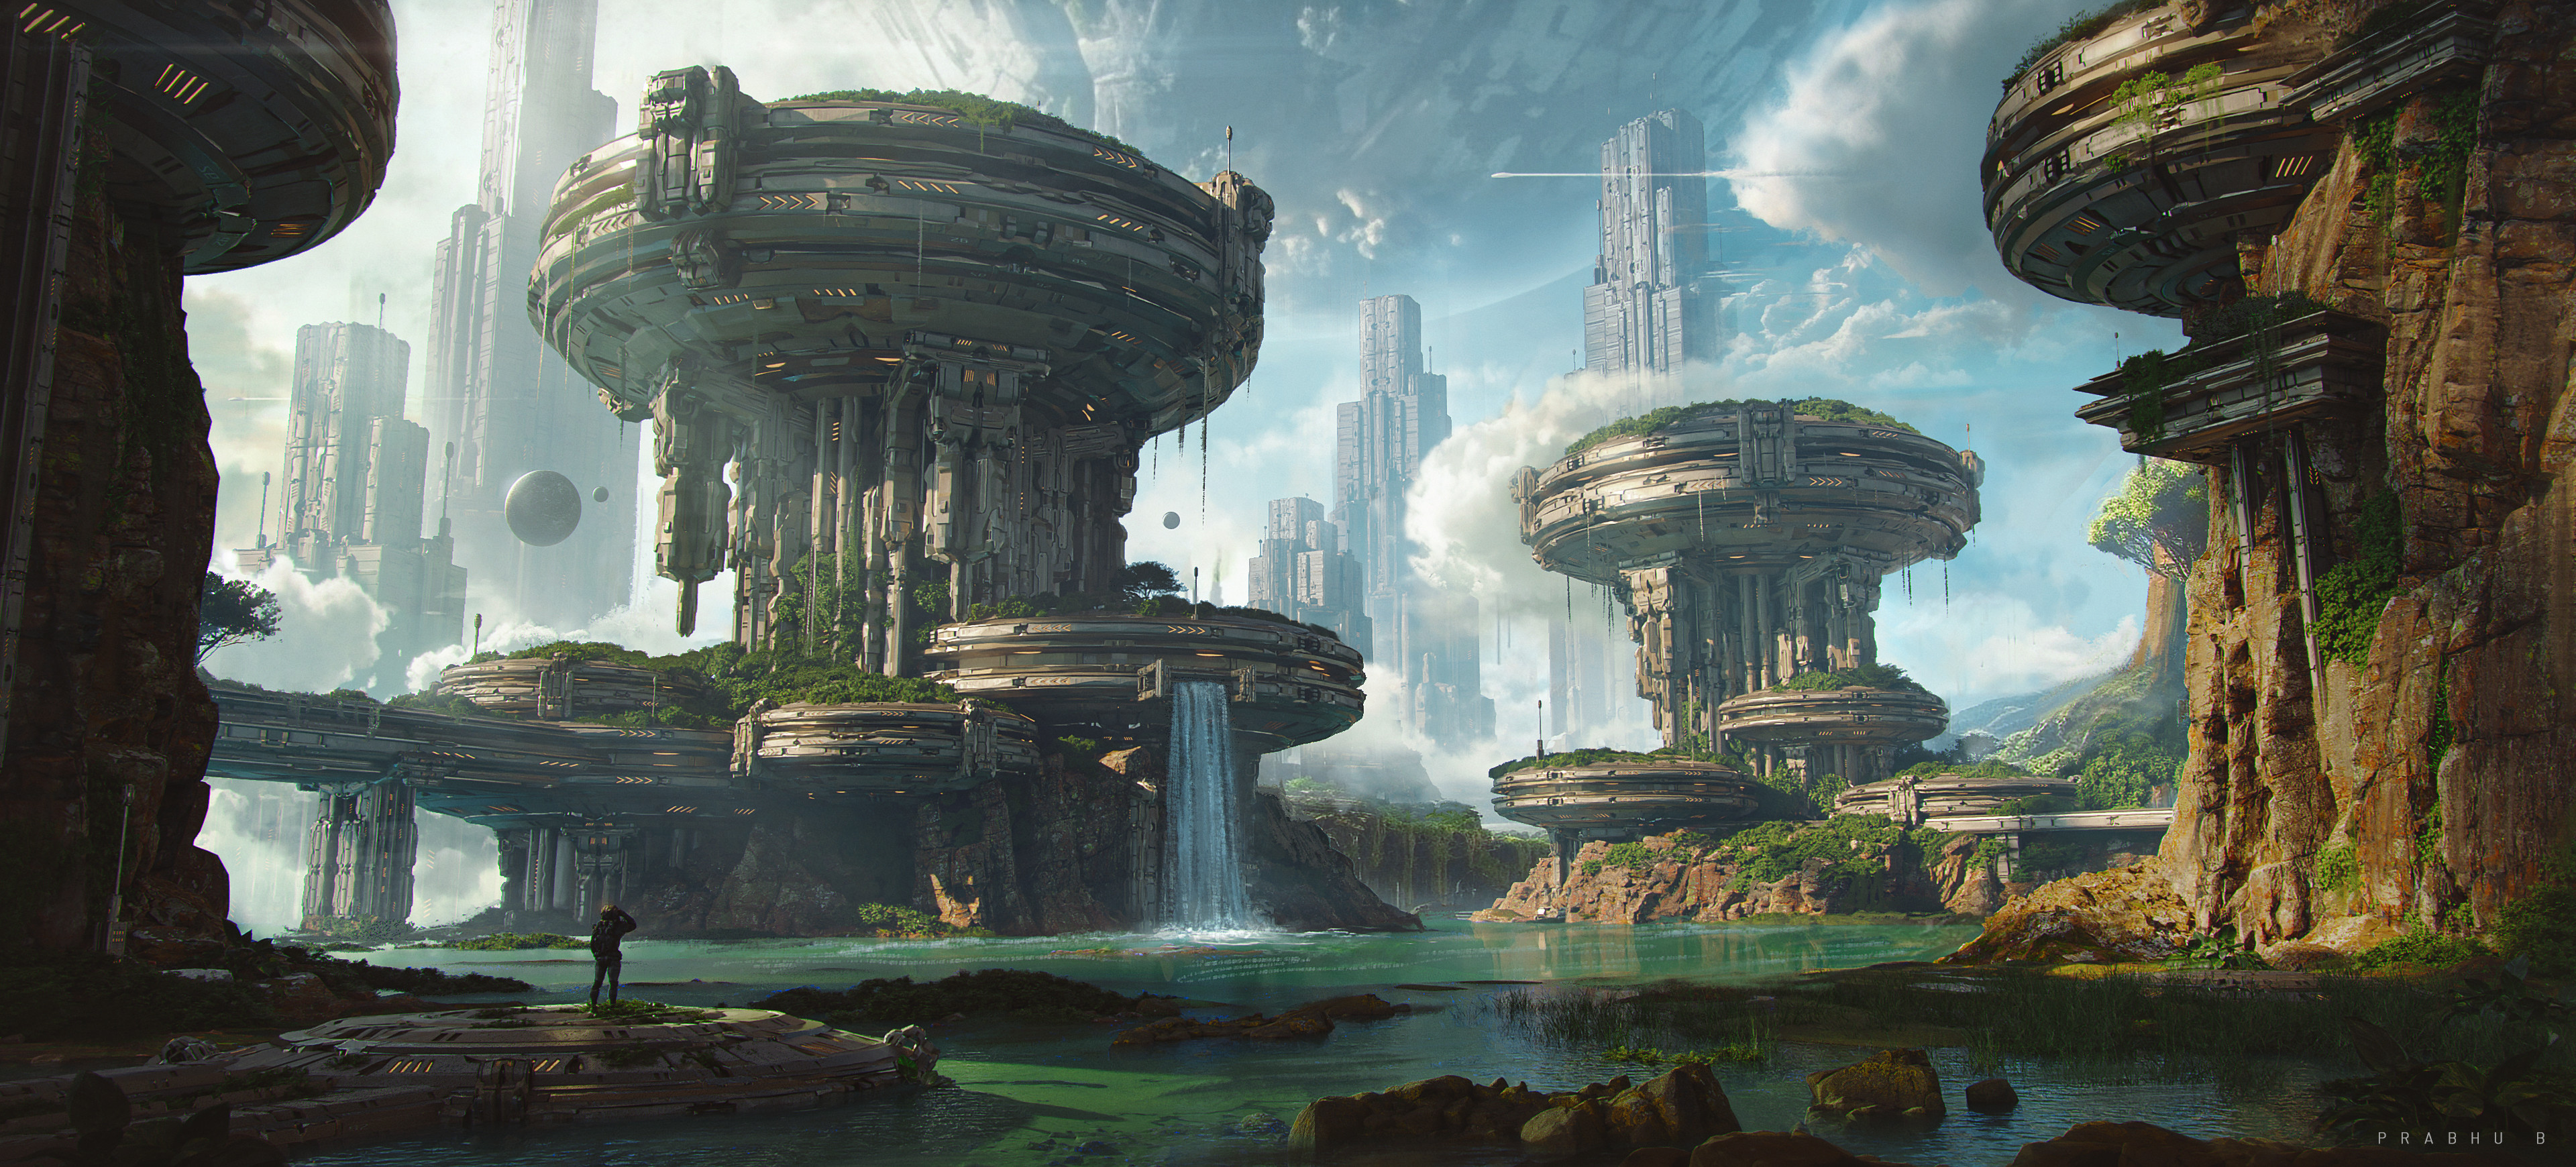 Рисунок города будущего с водопадом